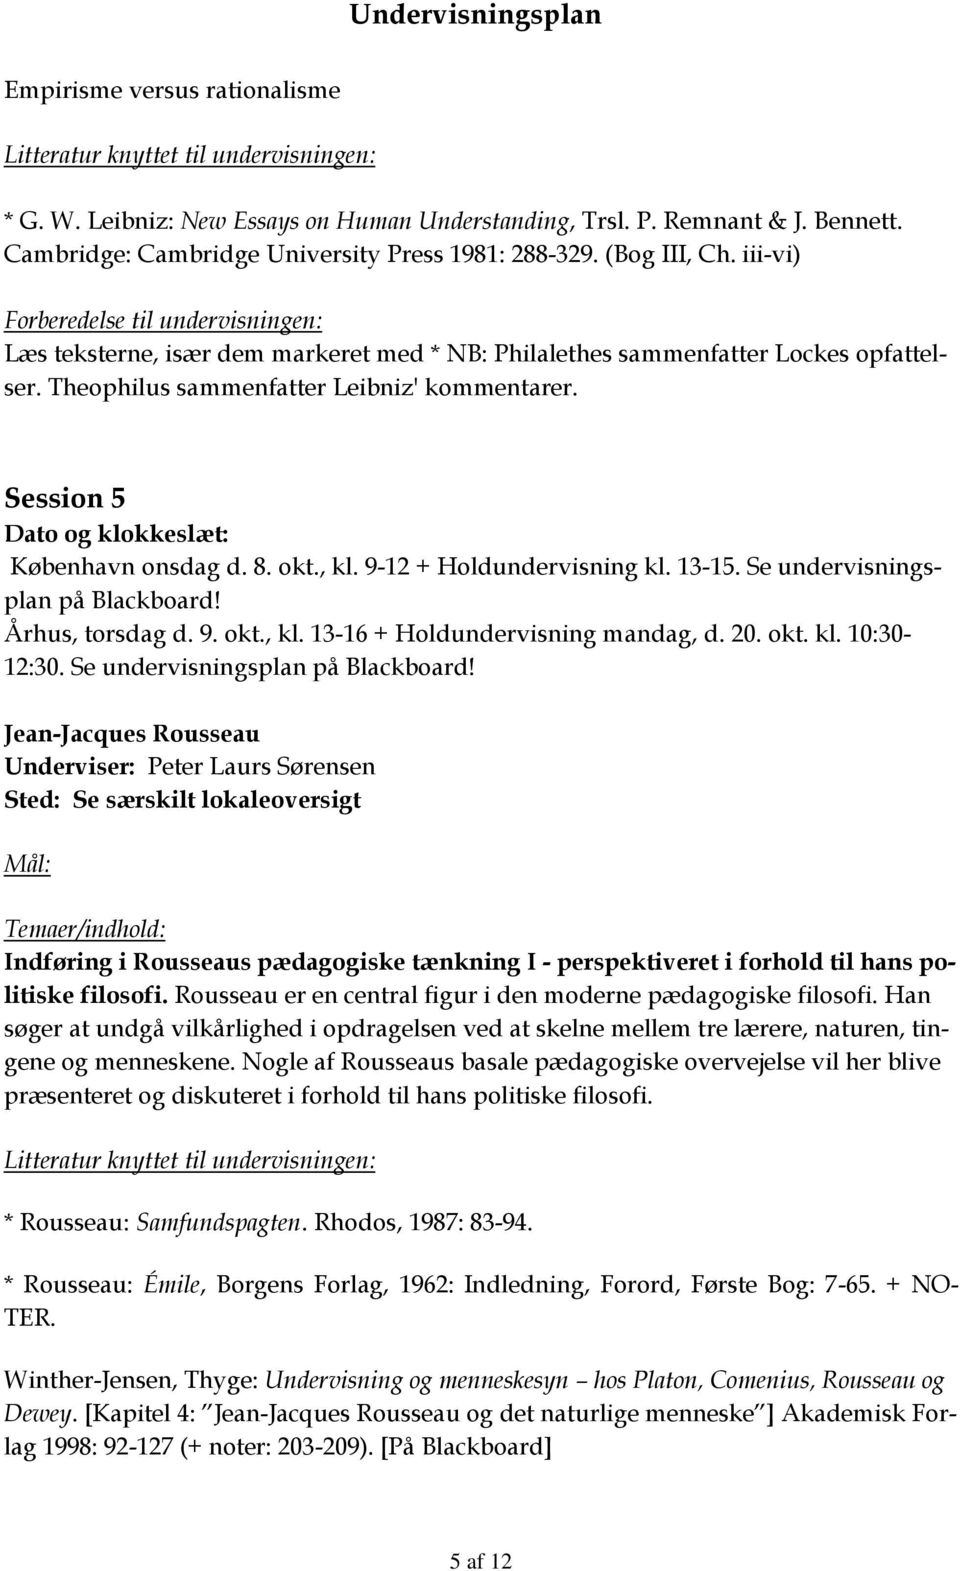 Se undervisningsplan på Blackboard! Århus, torsdag d. 9. okt., kl. 13-16 + Holdundervisning mandag, d. 20. okt. kl. 10:30-12:30. Se undervisningsplan på Blackboard!